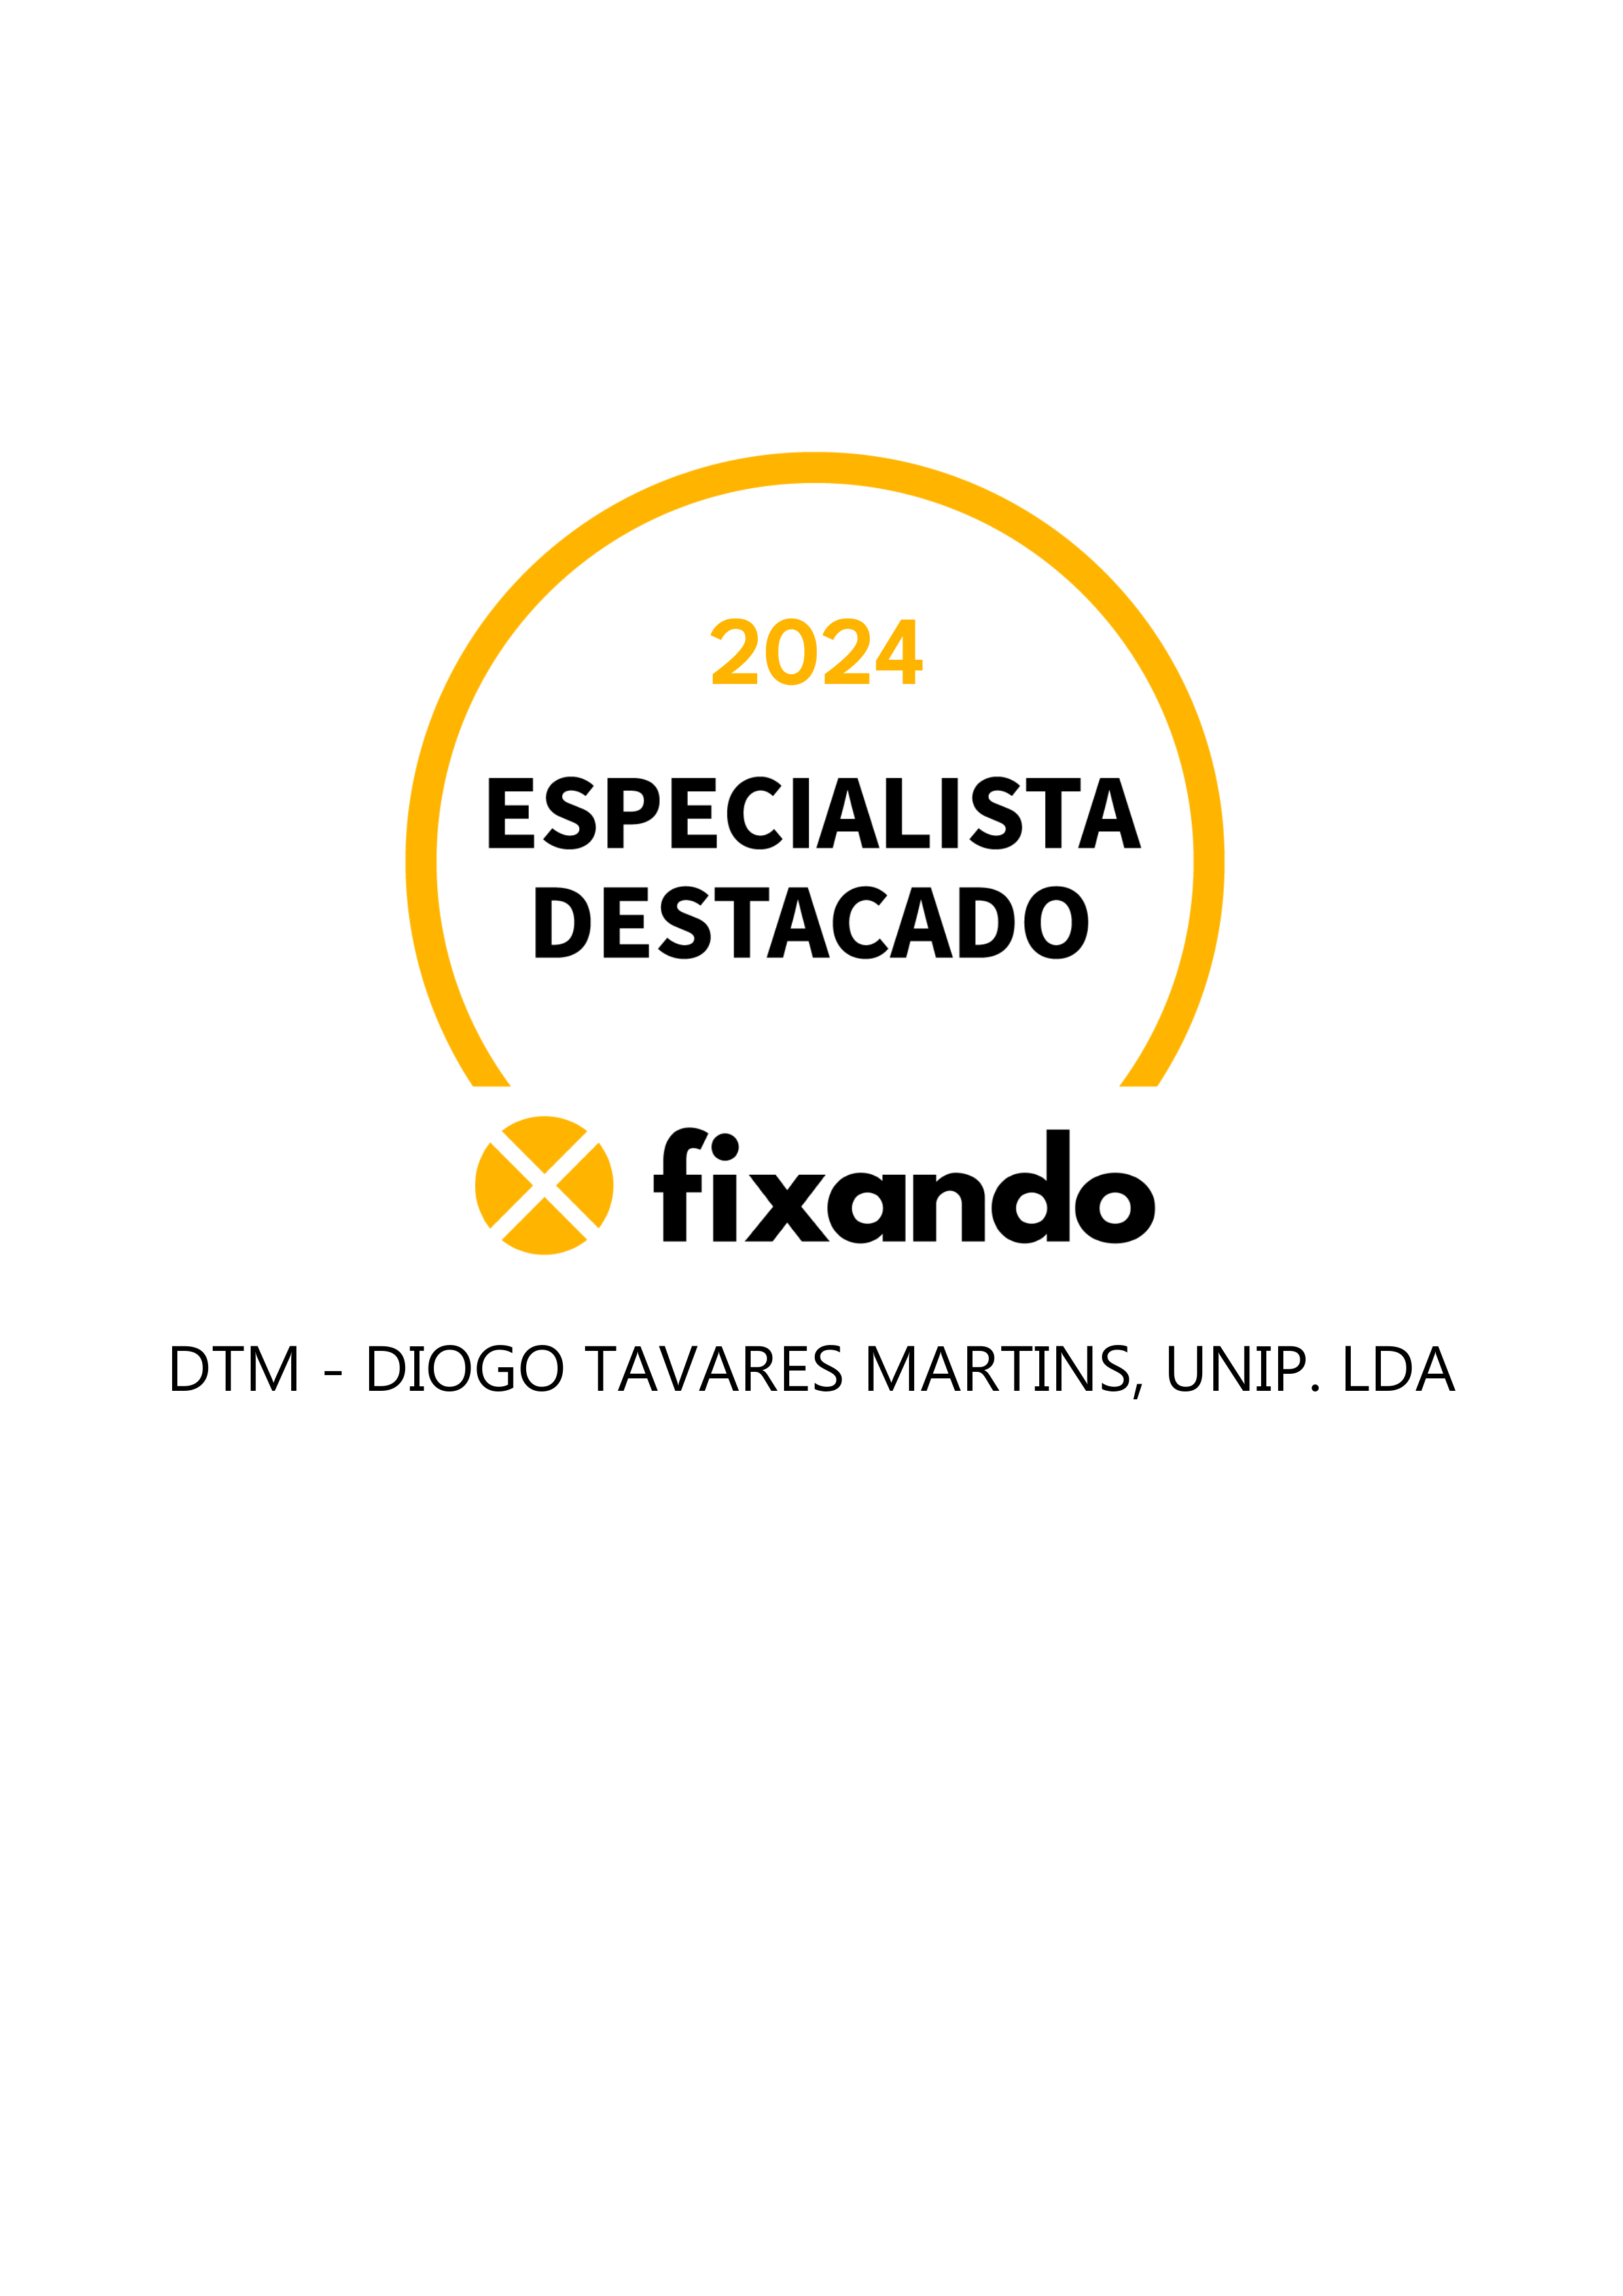 DTM - Diogo Tavares Martins, Unip. Lda - Estarreja - Instalação ou Substituição de Telhado